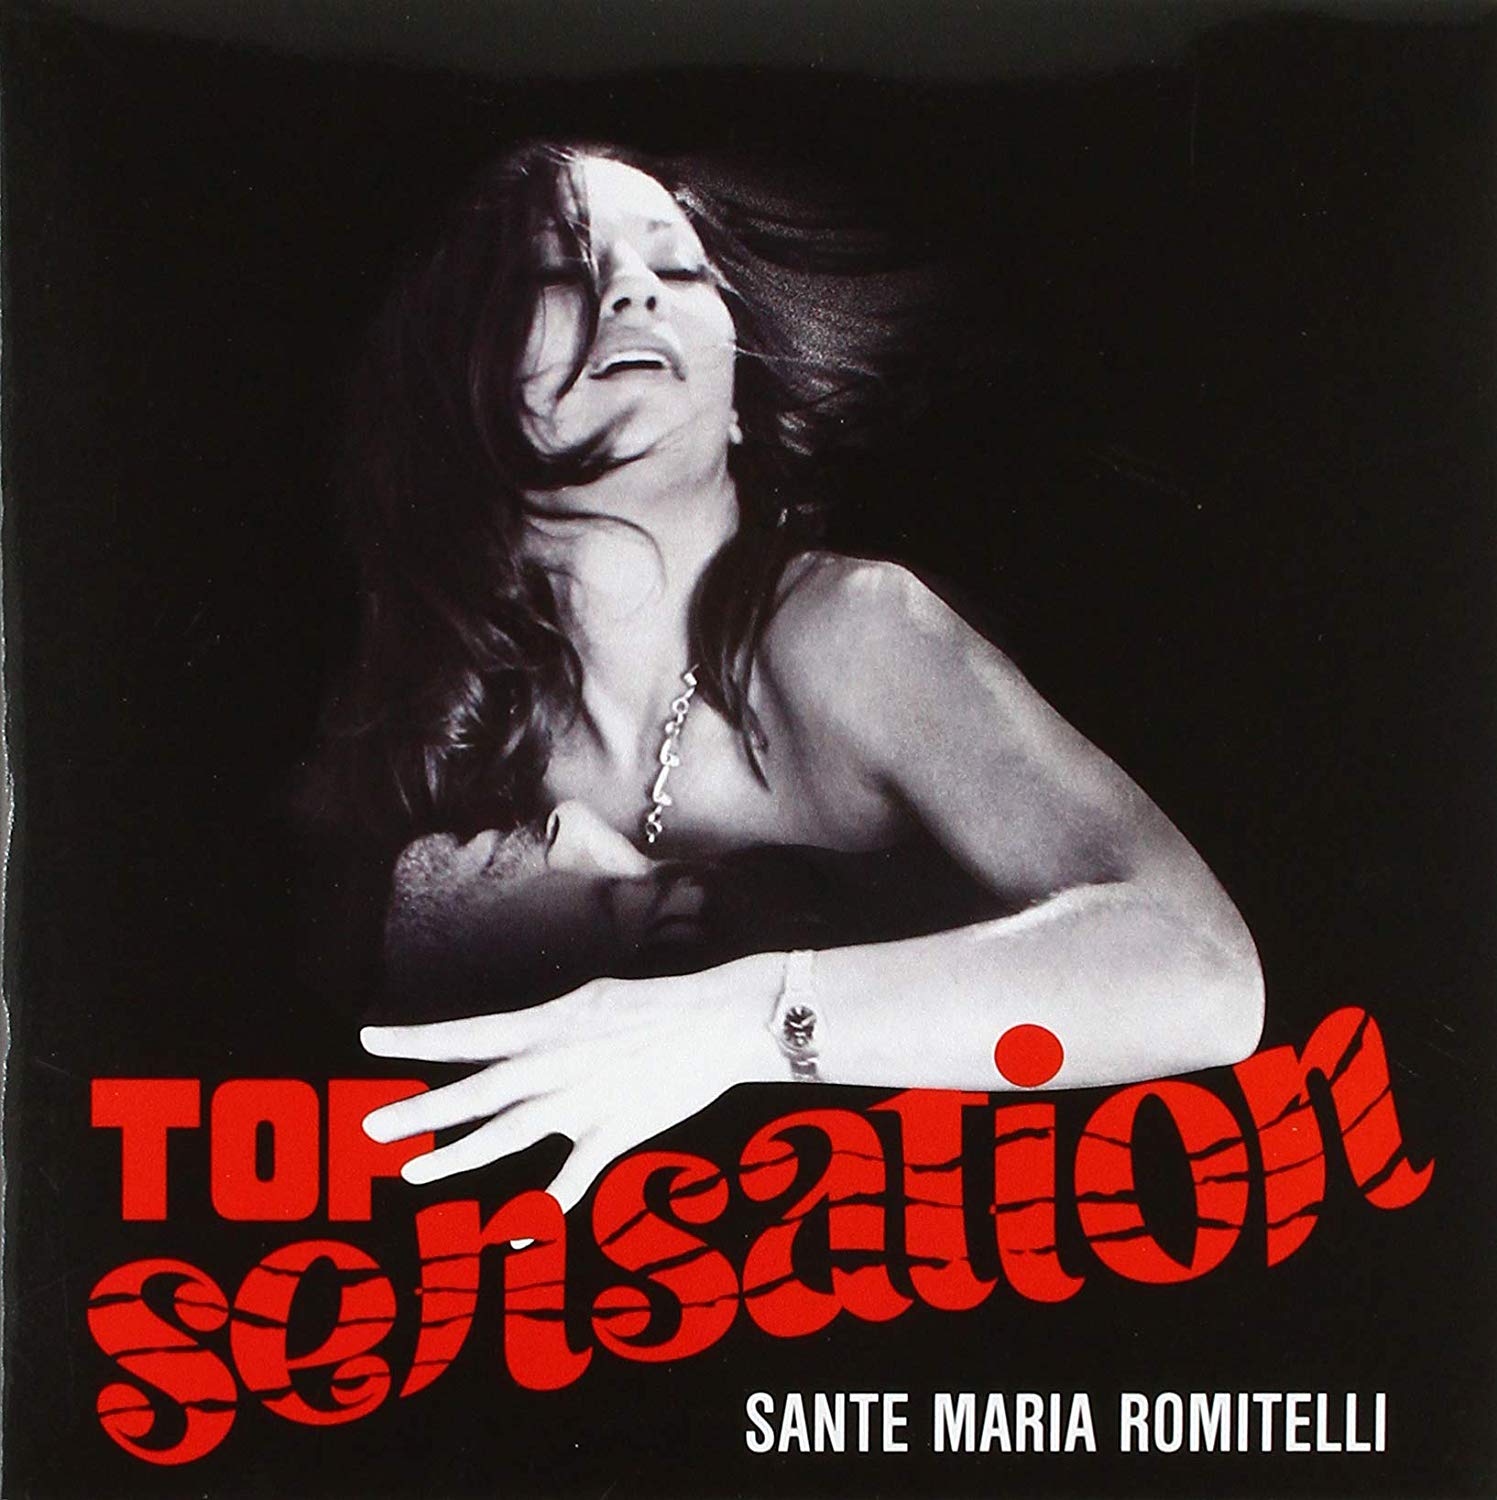 Vinile Sante Maria Romitelli - Top Sensation NUOVO SIGILLATO SUBITO DISPONIBILE